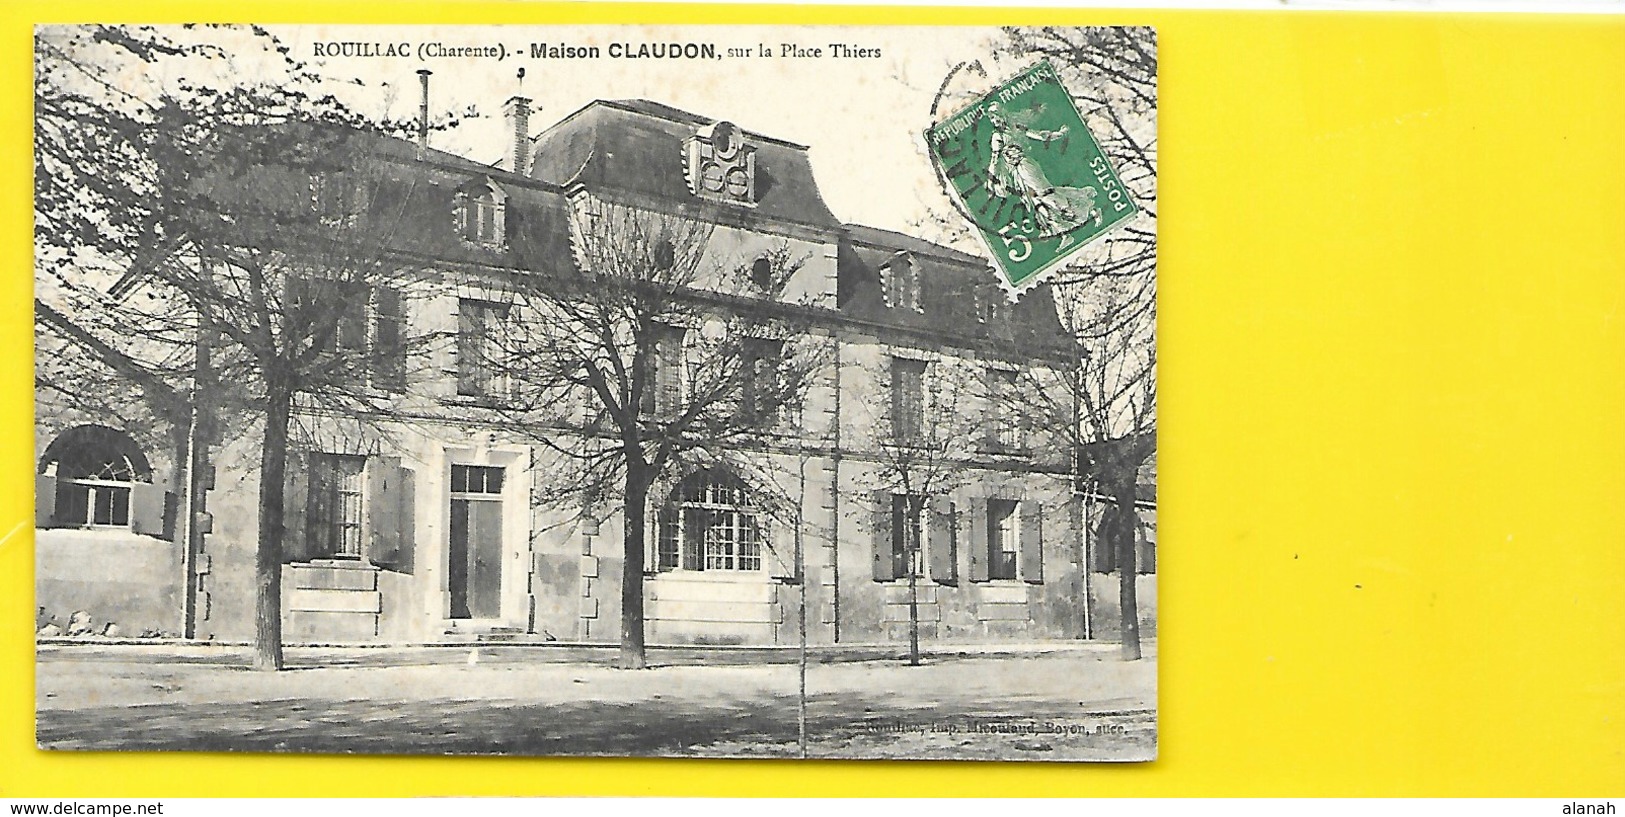 ROUILLAC Maison CLAUDON Place Thiers () Charente (16) - Rouillac